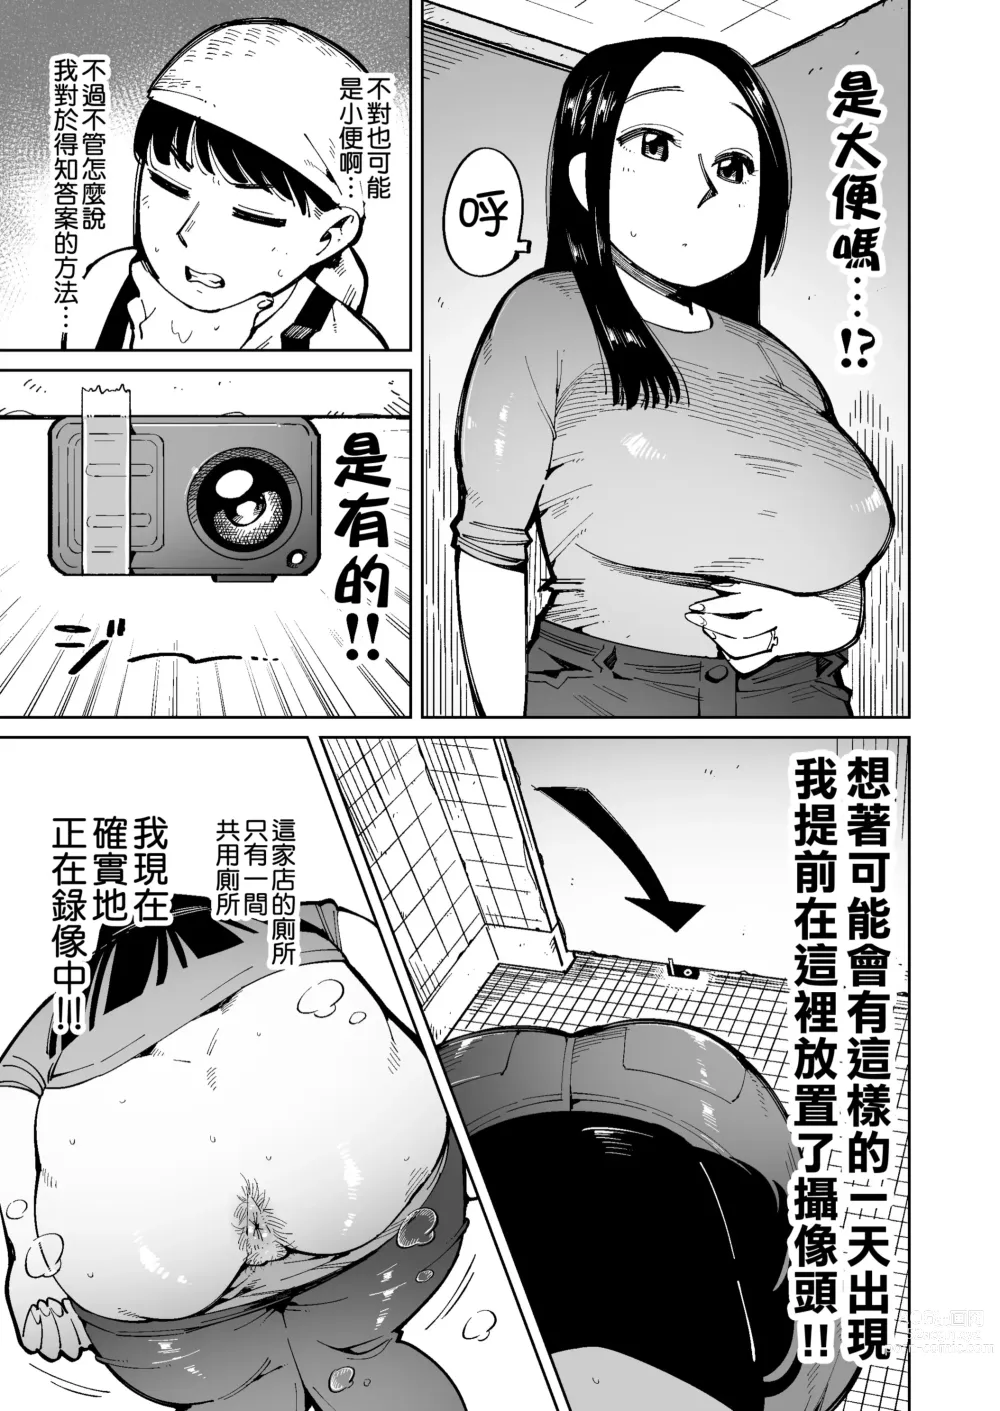 Page 4 of doujinshi 在電車上對大屁股太太進行癡漢行為時弄到大便失禁了所以就這麼操下去了。